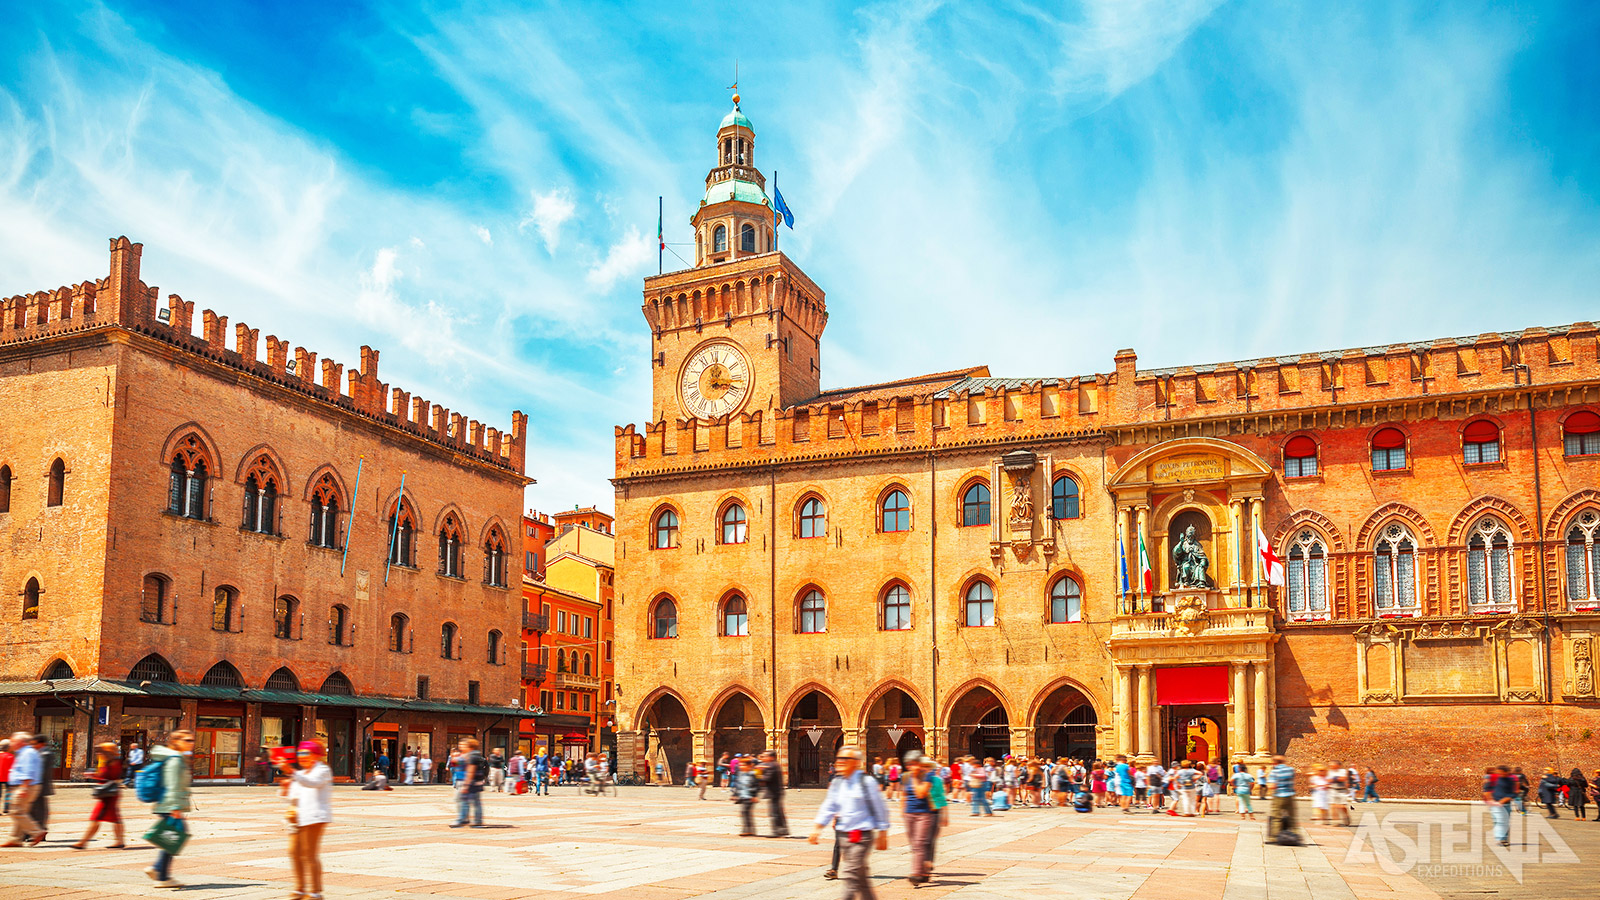 Het mooiste plein van Bolgona is zonder twijfel Piazza Maggiore met zijn impossante bouwwerken